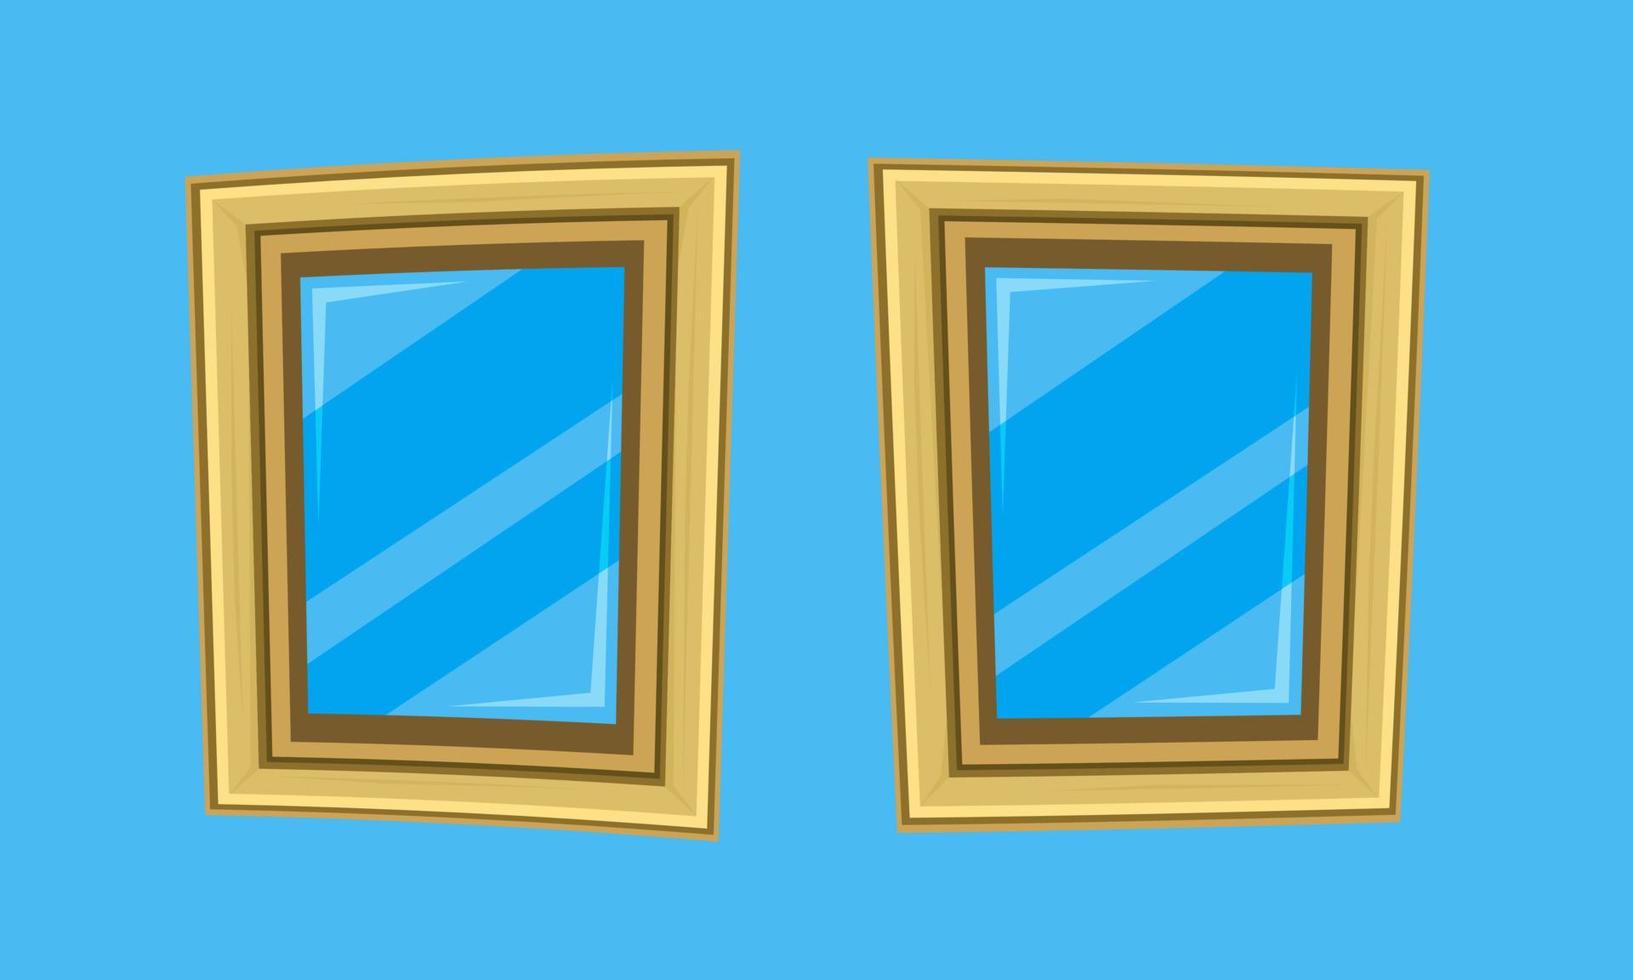 Cartoony stilisierte Fotorahmen spiegeln Fenster wider vektor